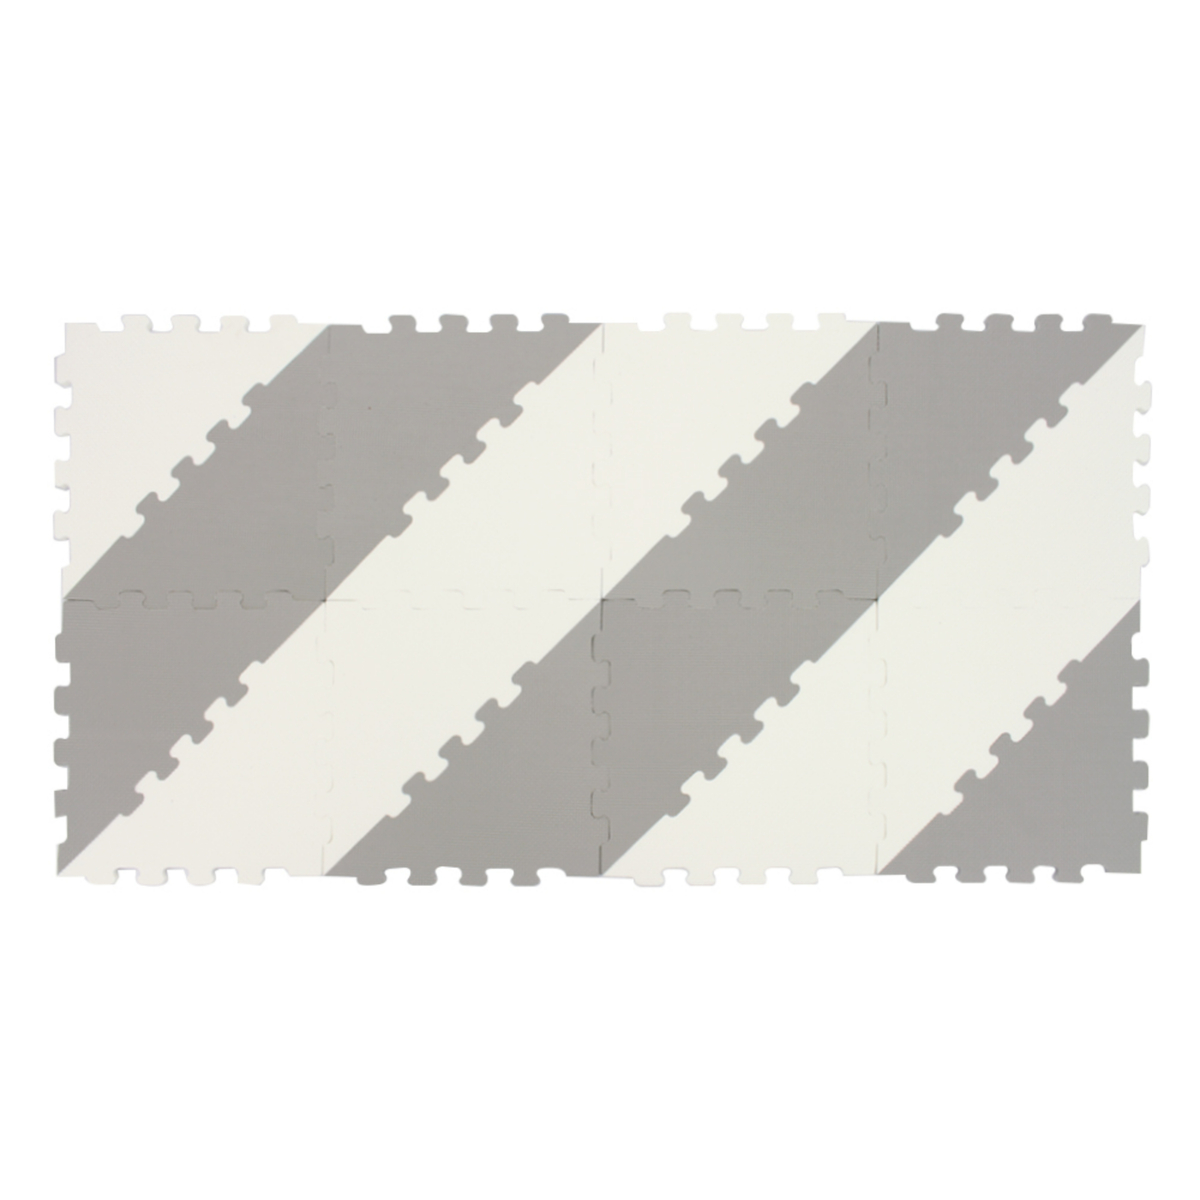 سونتا سجاد تركيب، 16 قطعة، رمادي/أبيض، 1018B3-C GRY/WHT